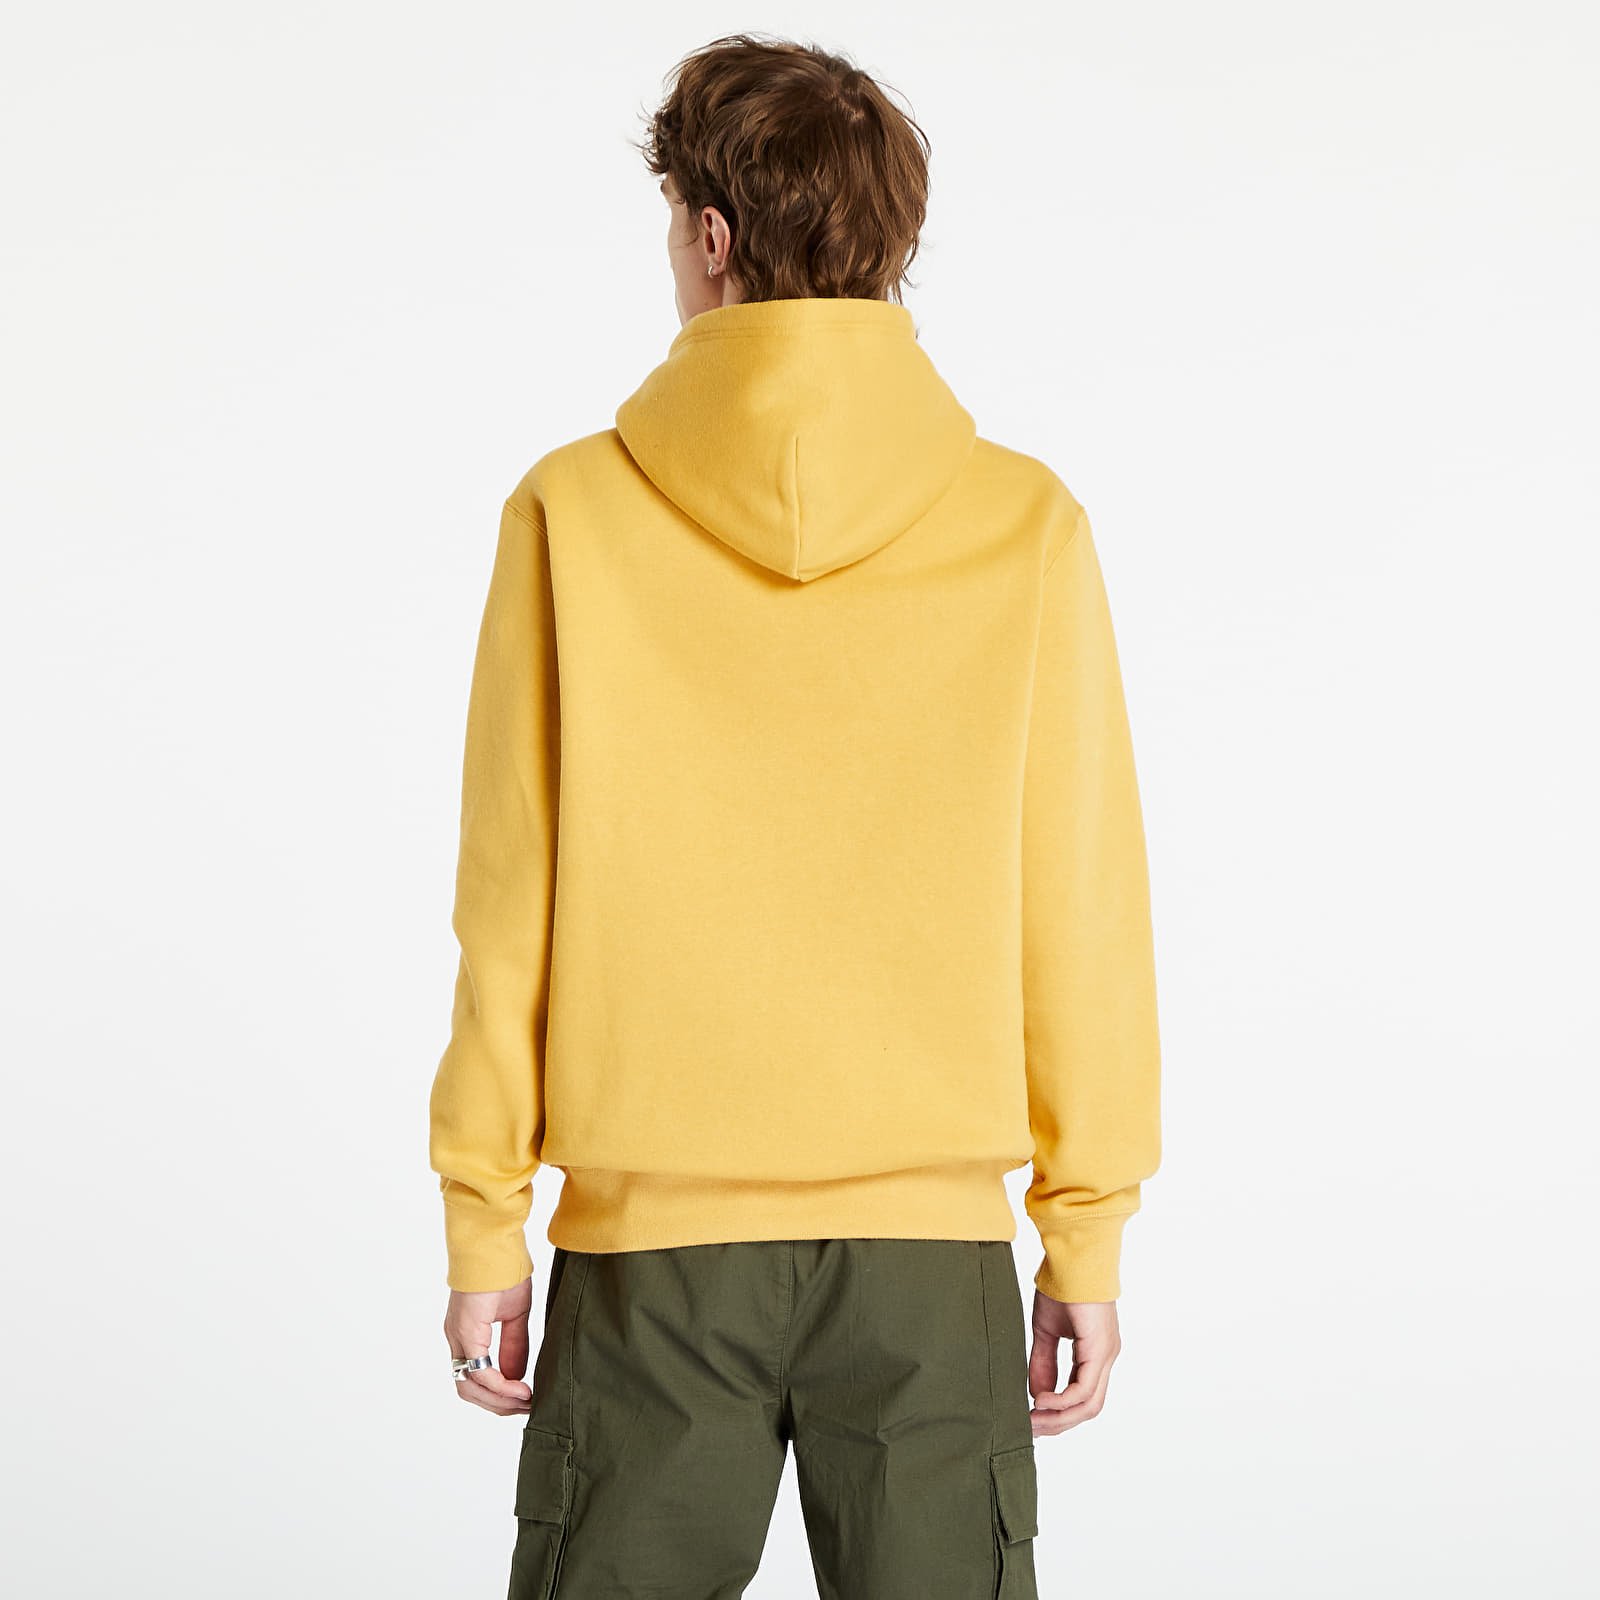 Hooded Sweatshirt Yellow